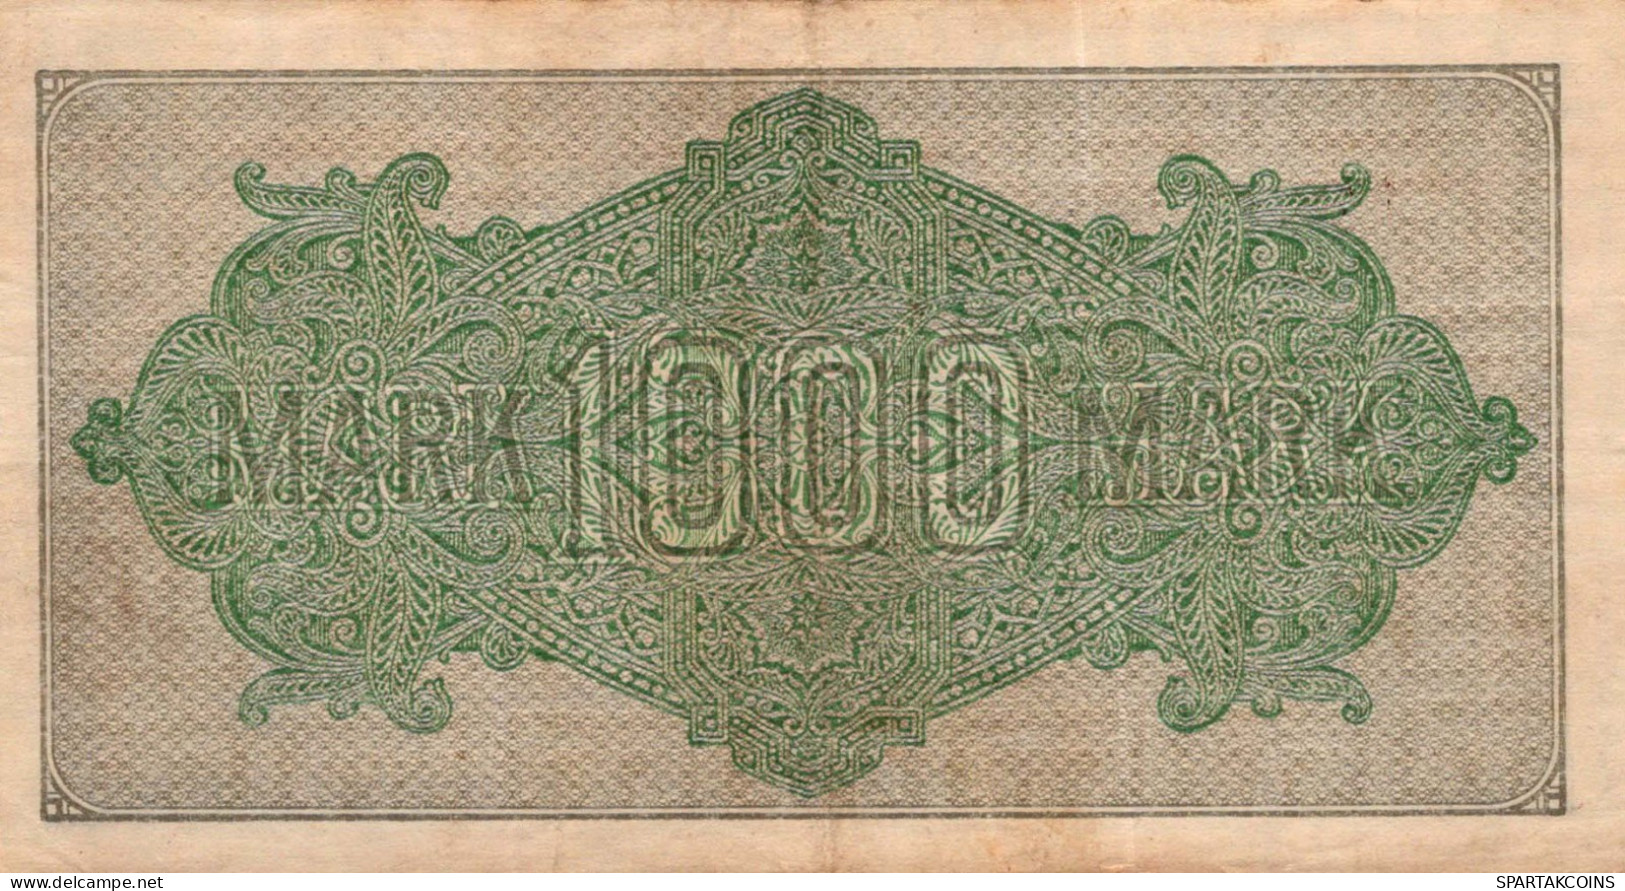 1000 MARK 1922 Stadt BERLIN DEUTSCHLAND Papiergeld Banknote #PL410 - [11] Emisiones Locales